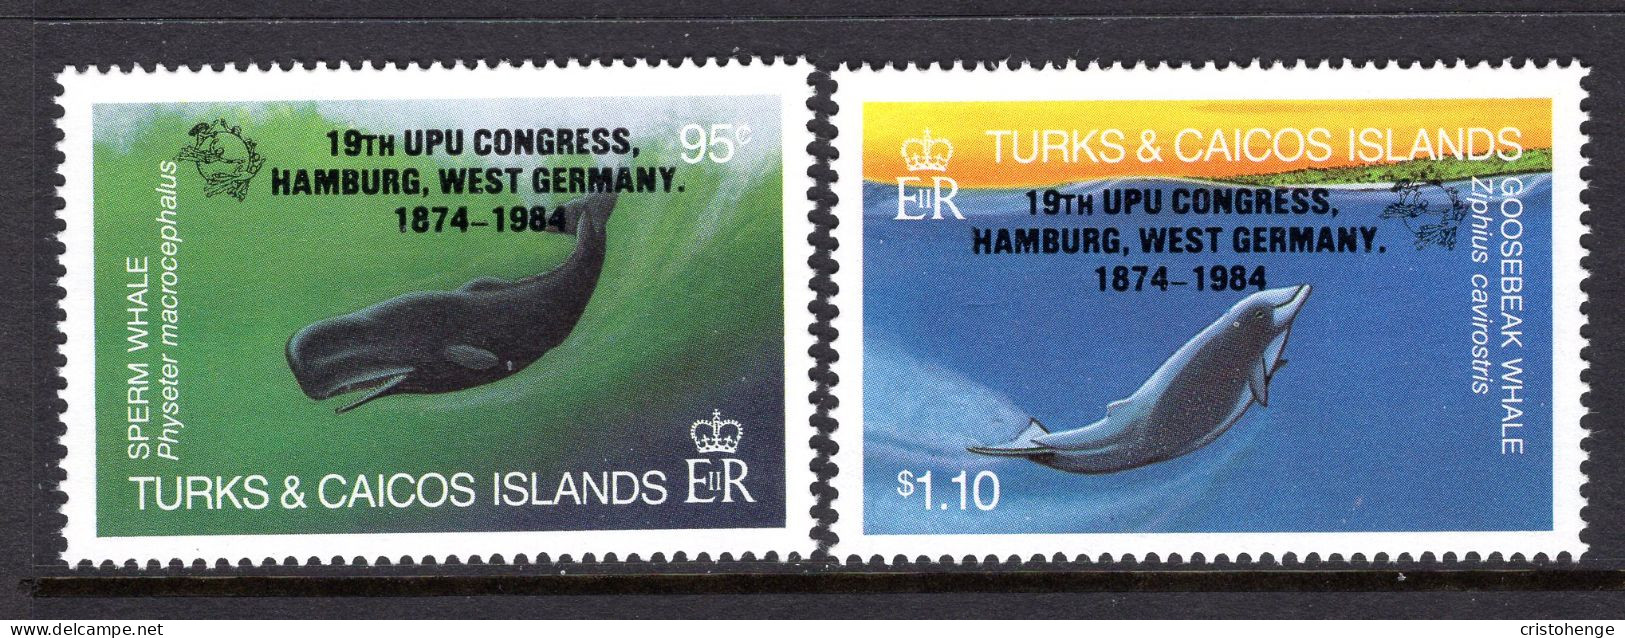 Turks & Caicos Islands 1984 UPU Congress, Hanburg - Whales - Set MNH (SG 810-811) - Turks And Caicos